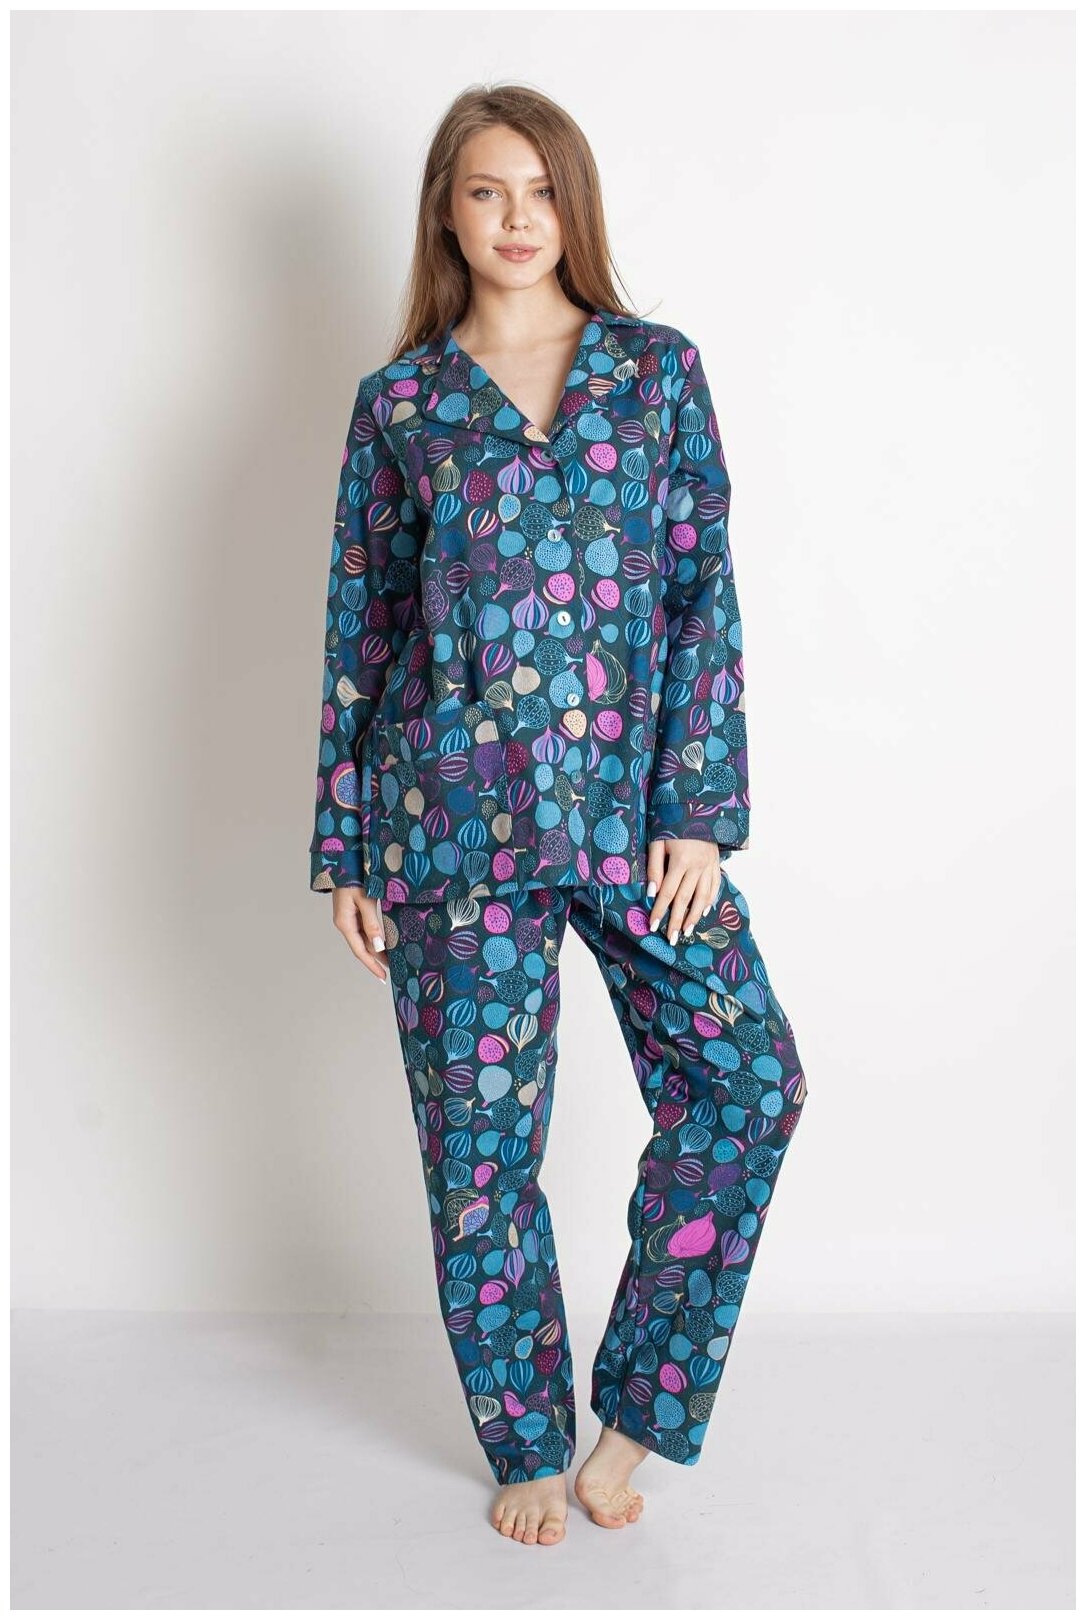 Женская пижама с брюками Серафима Изумрудный размер 54 Трикотаж Лика Дресс рубашка на 4 пуговицы с отложным воротником брюки прямого покроя с поясной - фотография № 2